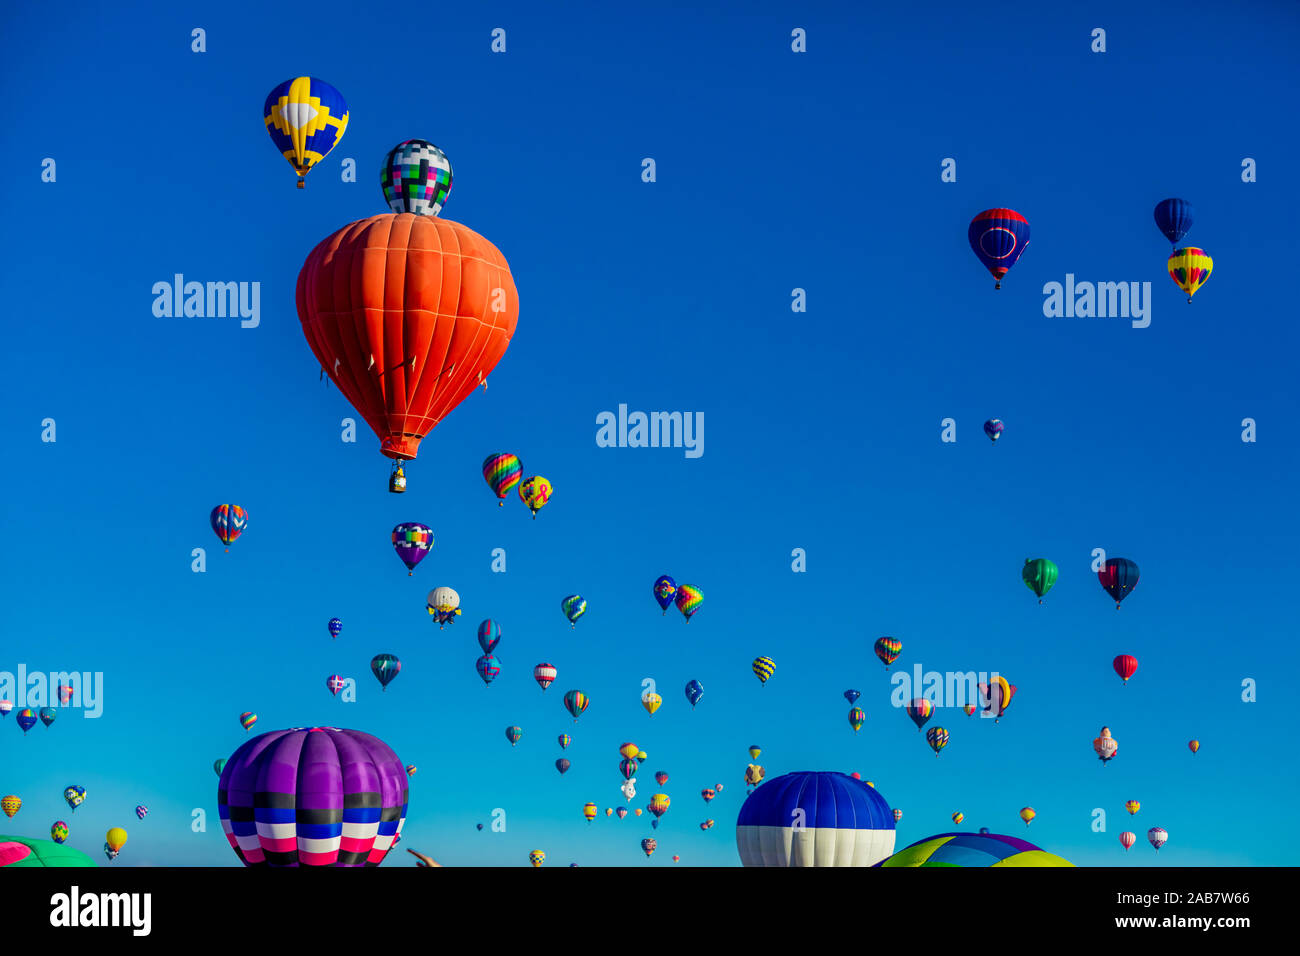 Fiesta Hot Air Balloon Festival, Albuquerque, New Mexico, North America Stock Photo